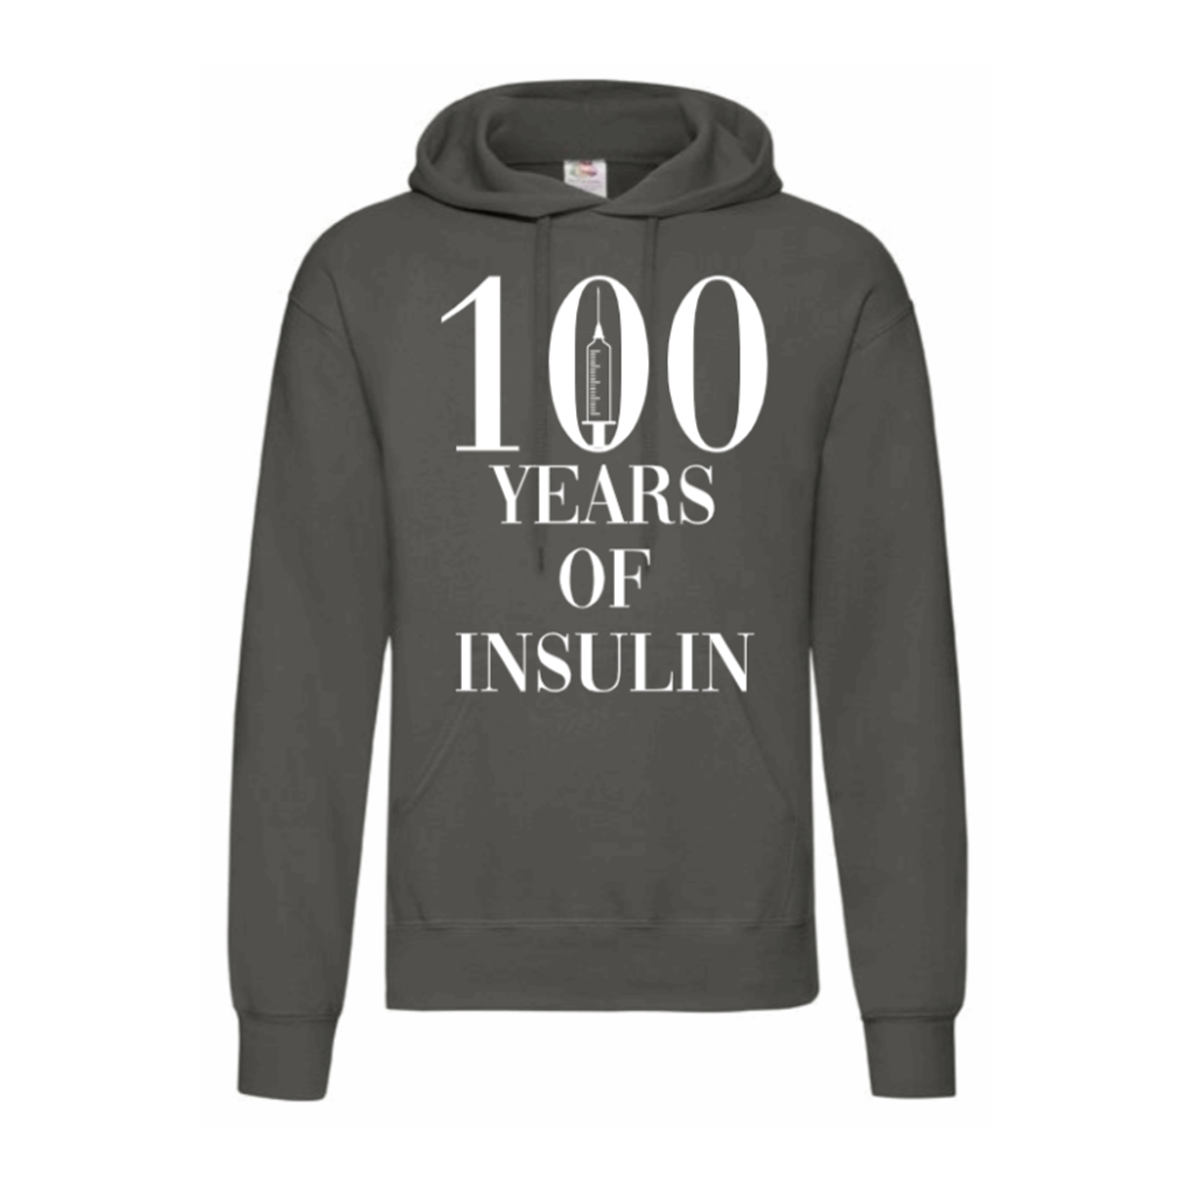 100 Years Of Insulin Hoodie